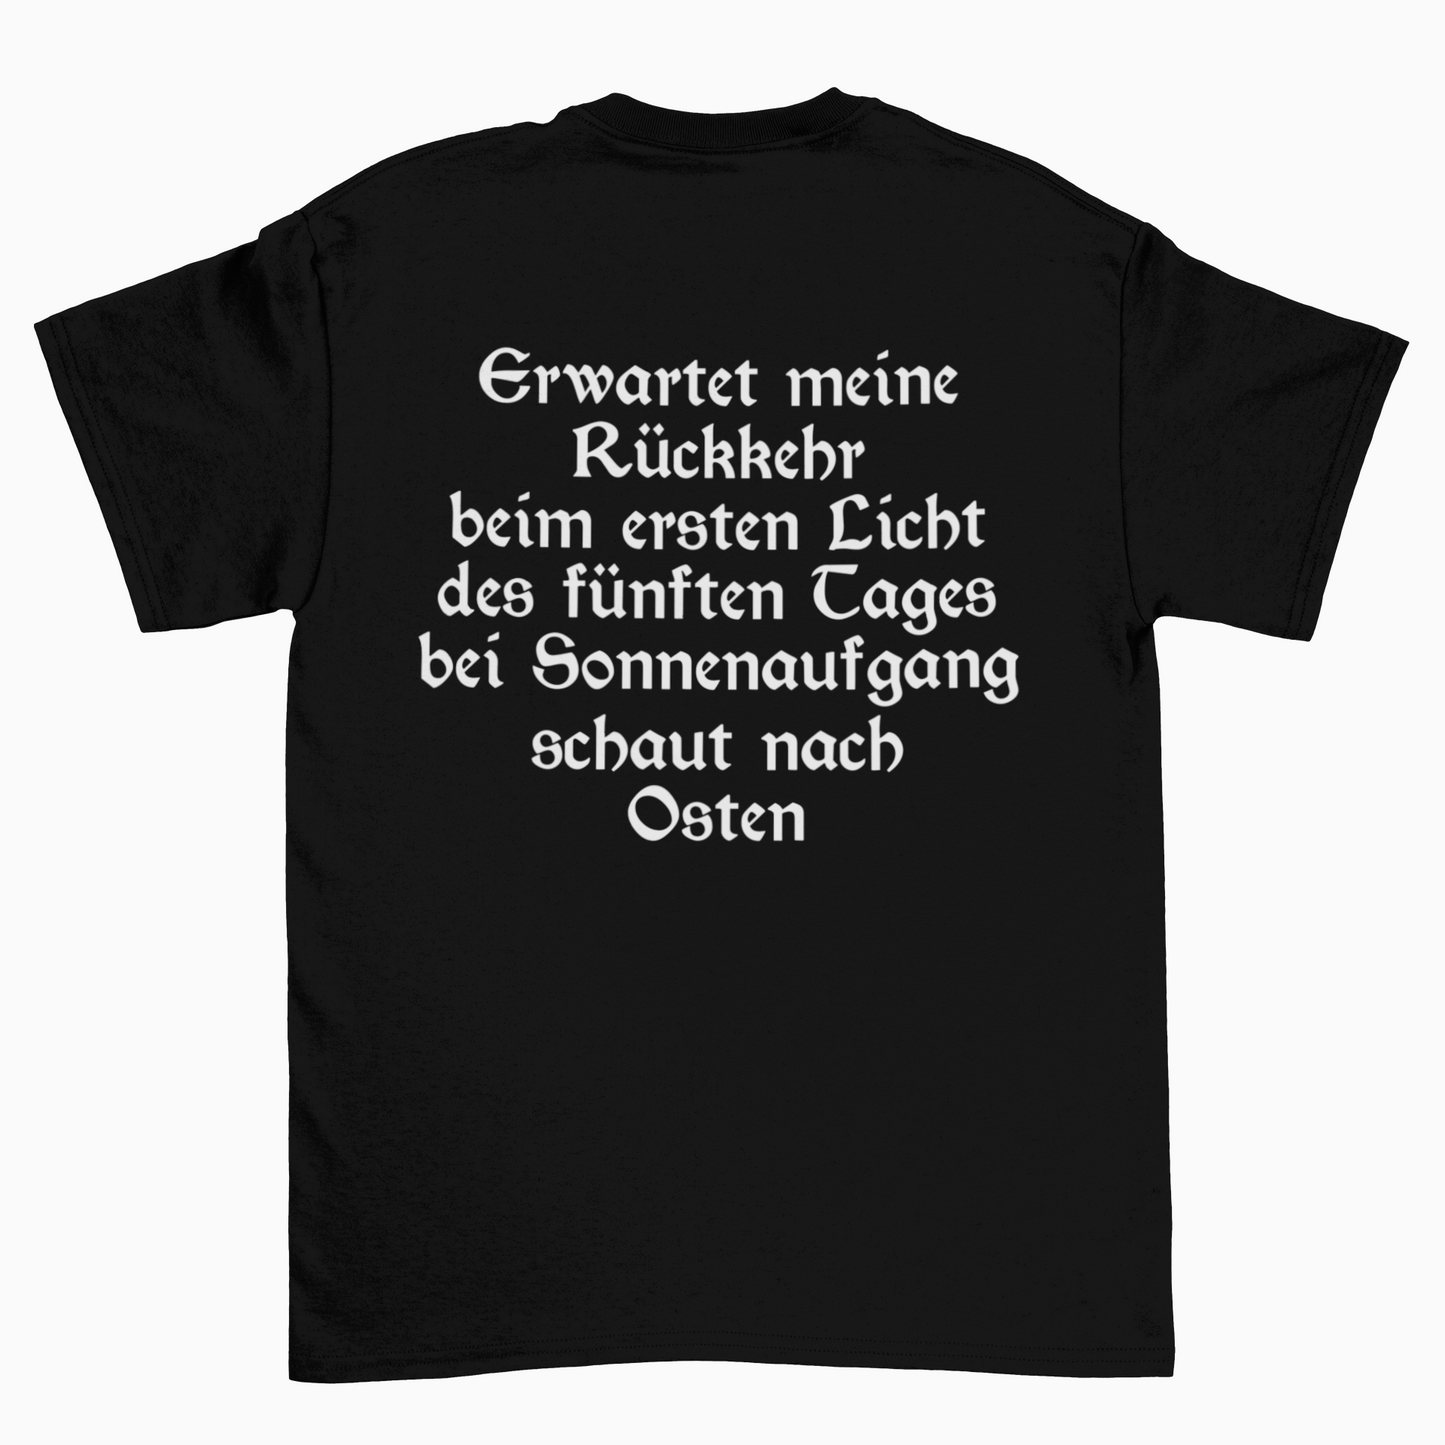 Werkstatt fahren (Front+Backprint)  - Unisex Shirt